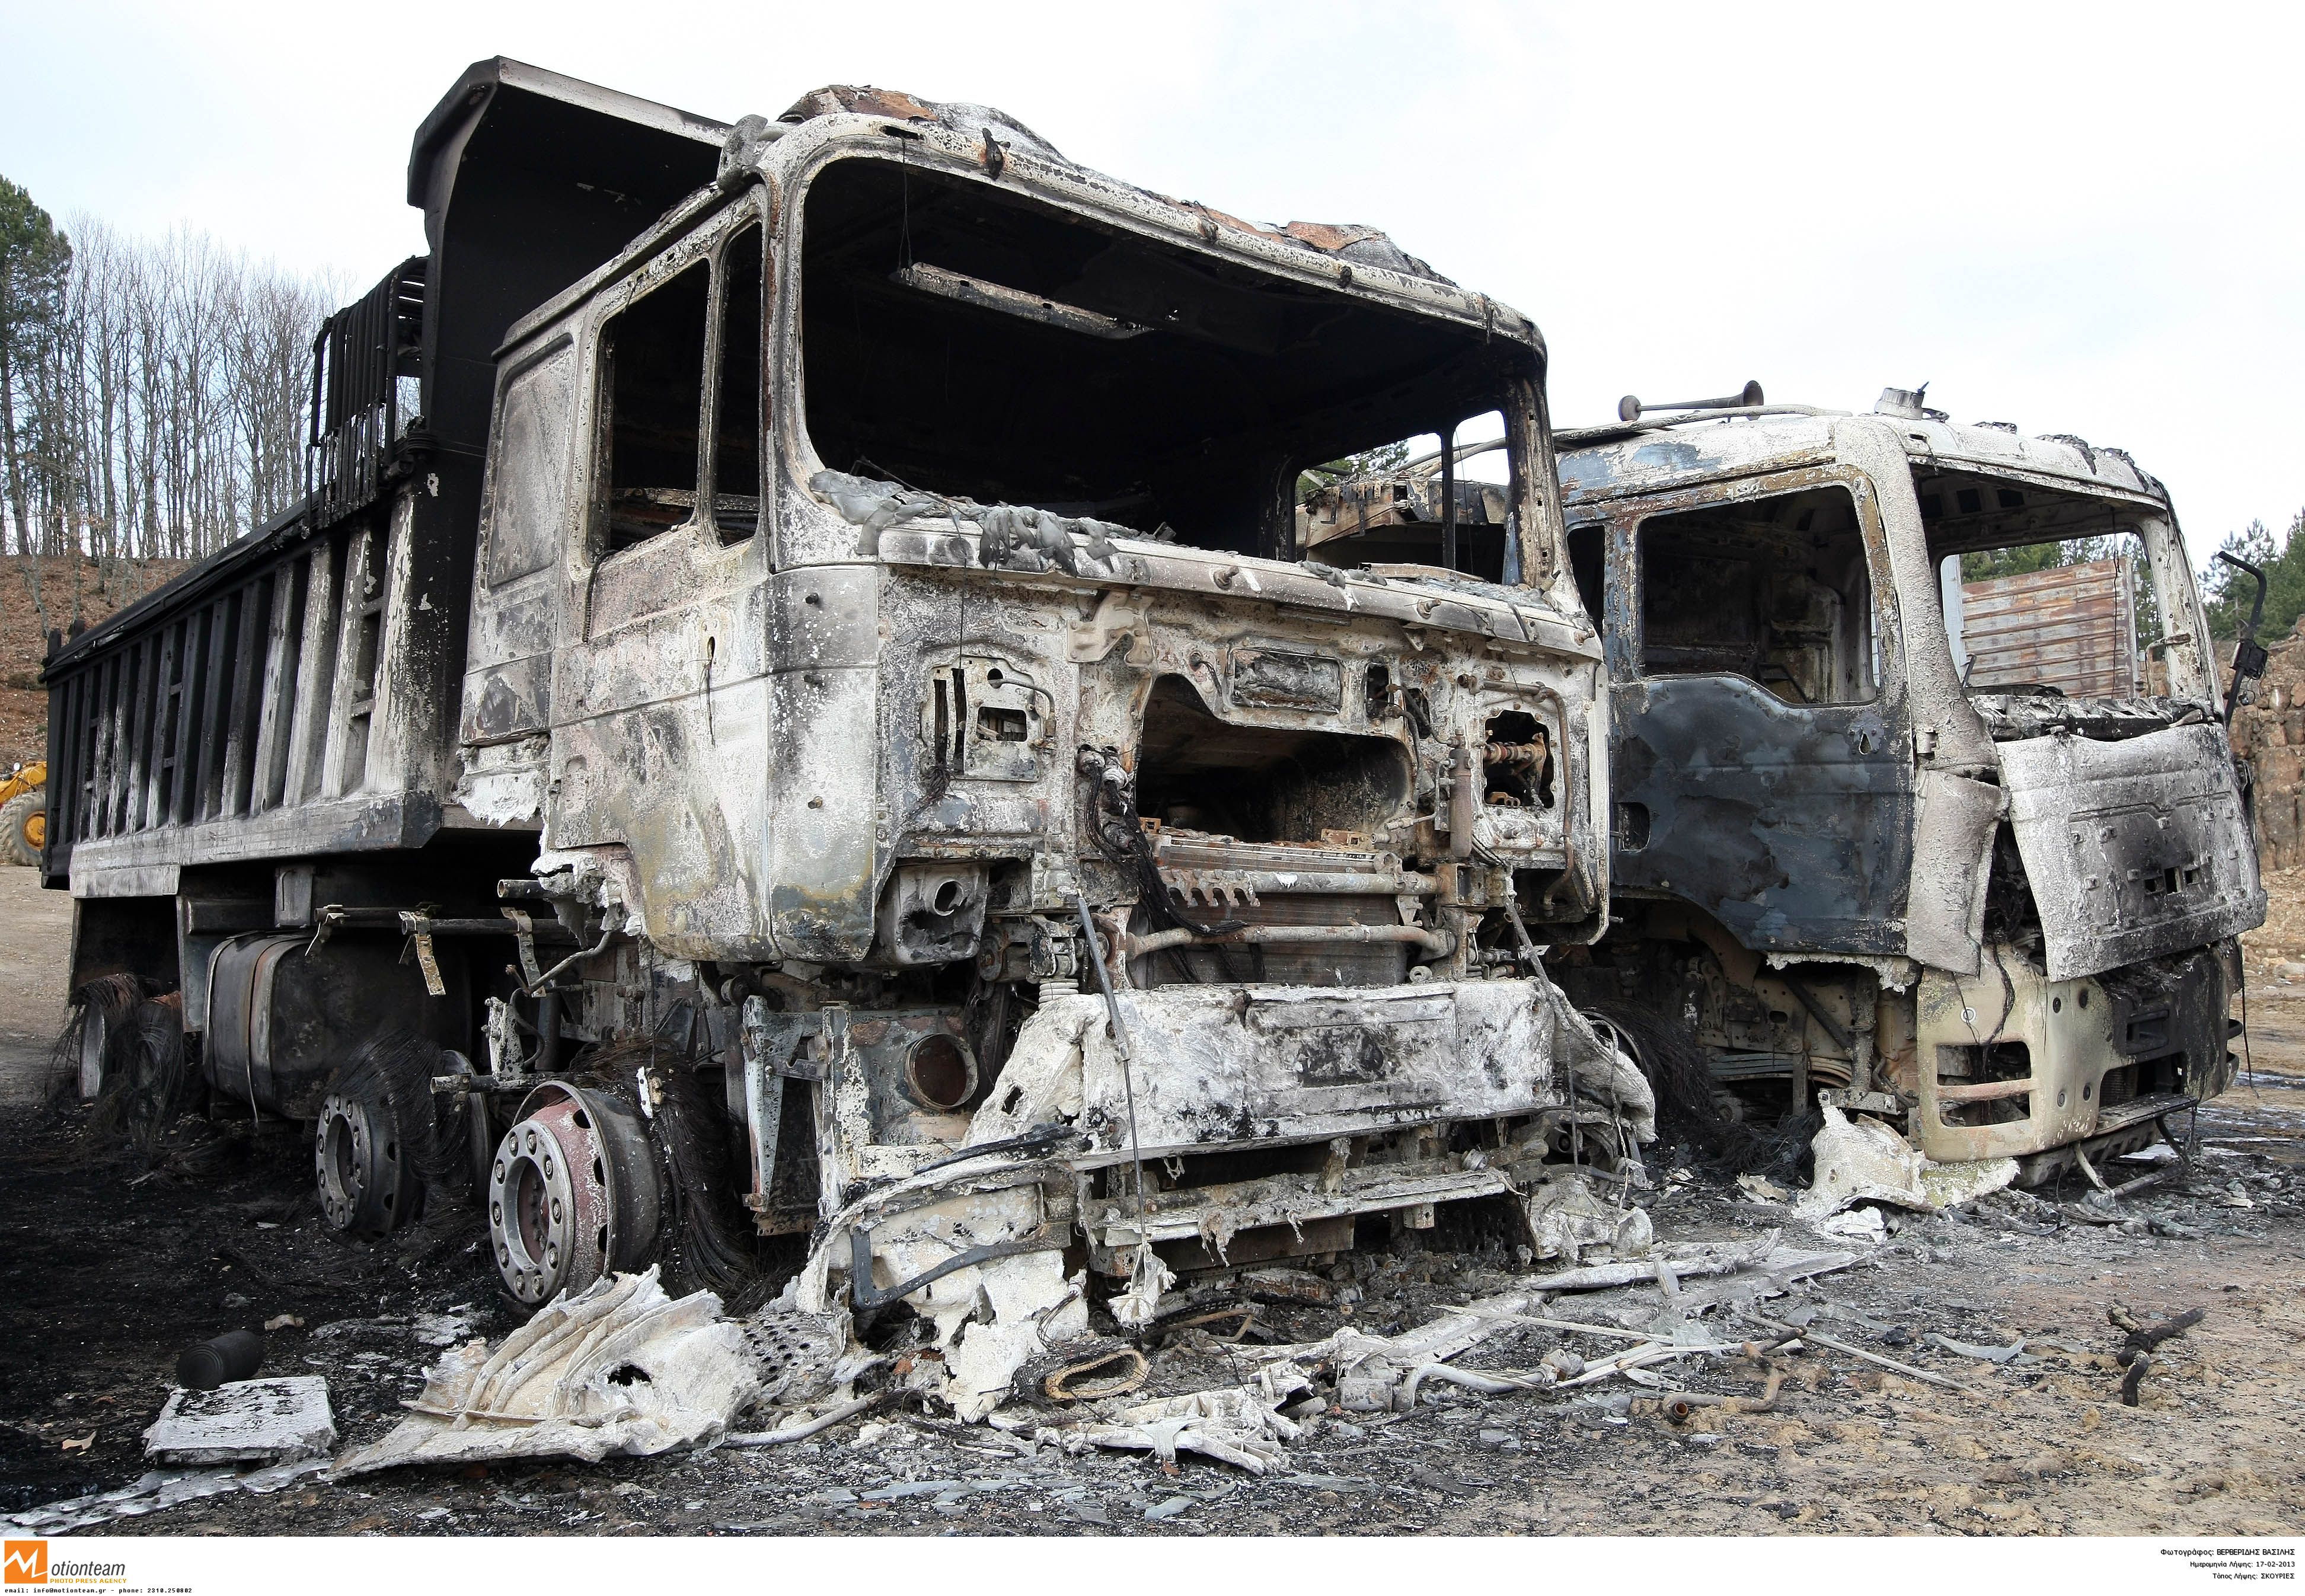 ΔΗΜΑΡ: Πρωτοφανές και επικίνδυνο φαινόμενο η επίθεση στις Σκουριές